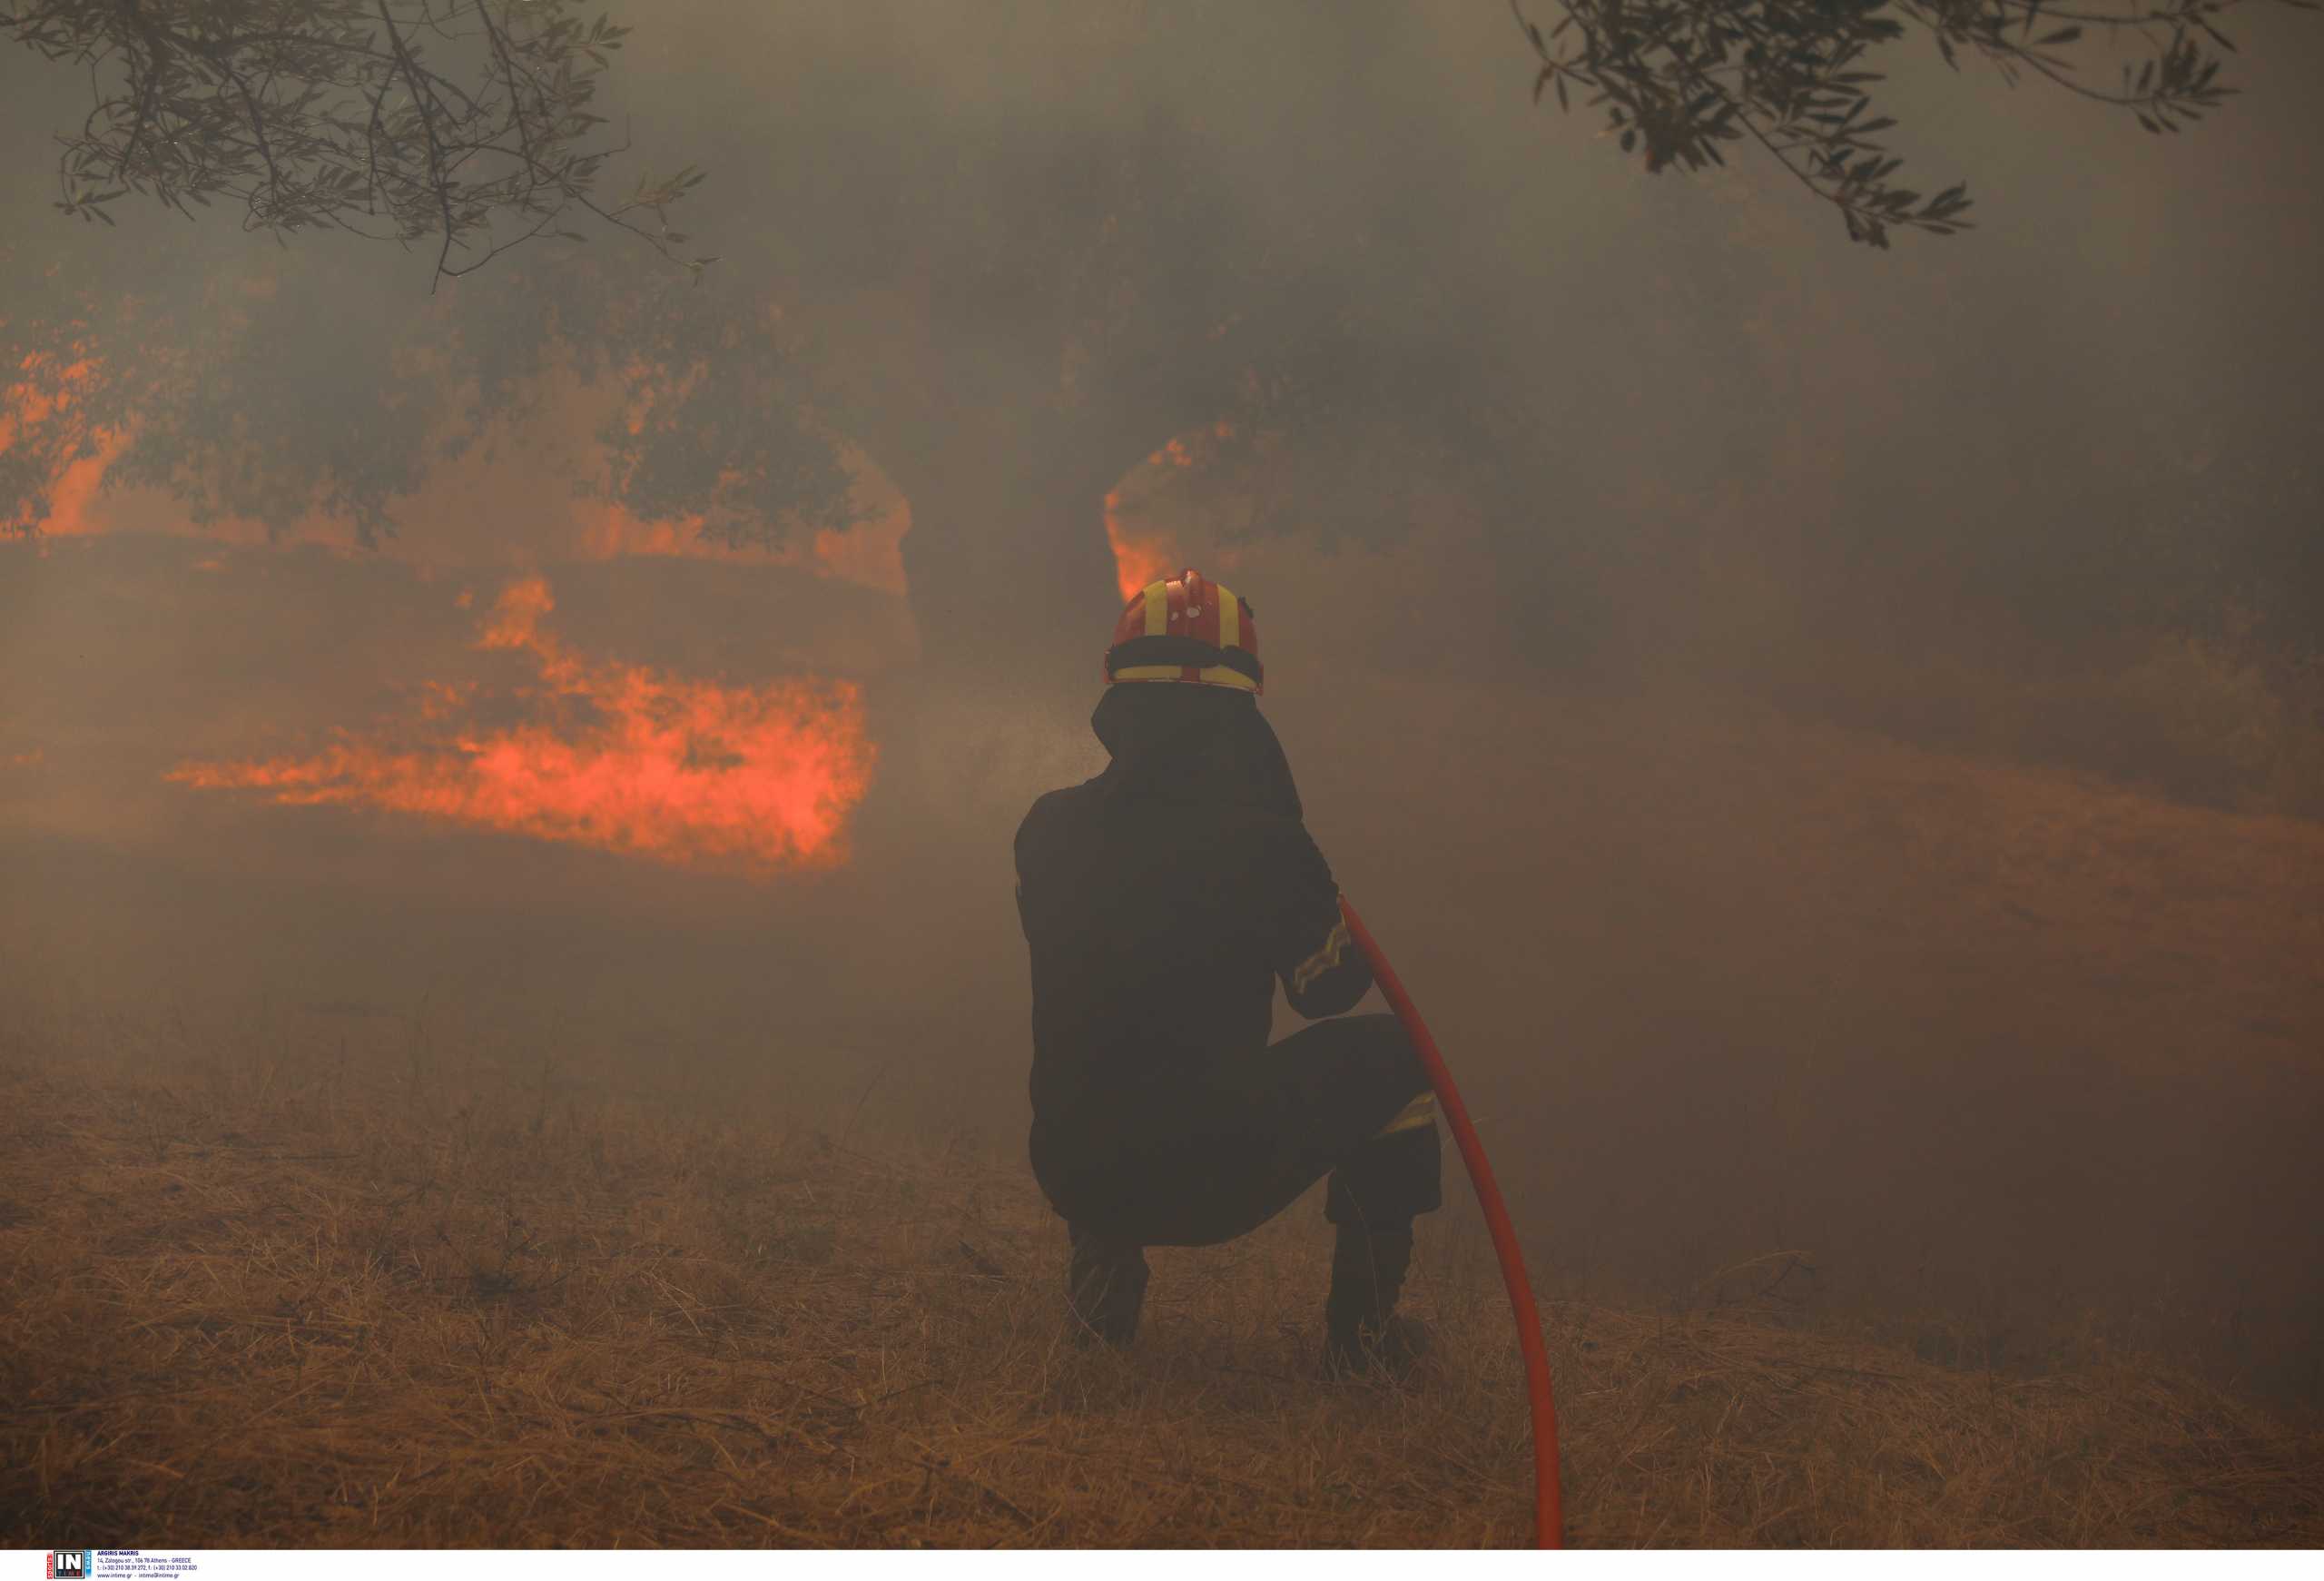 Ακραίος κίνδυνος πυρκαγιάς την Κυριακή για περιοχές της Ελλάδας – Σε κατάσταση συναγερμού Αττική και Εύβοια